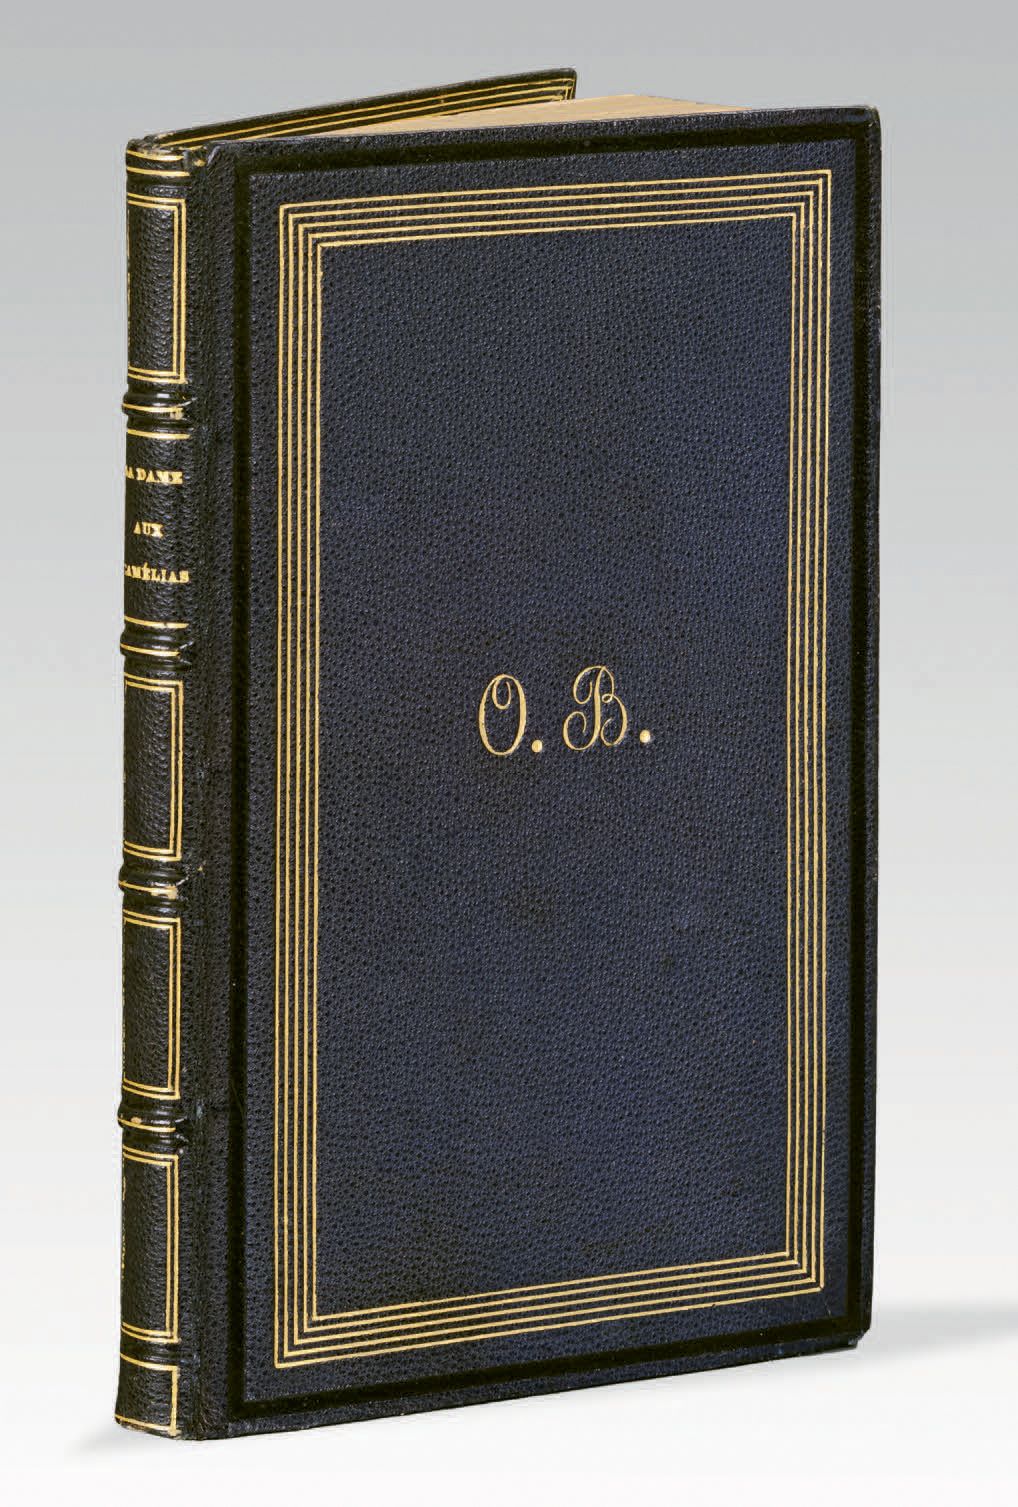 DUMAS fils (Alexandre). La Dame aux camélias. Deuxième édition. Paris, D. Giraud&hellip;